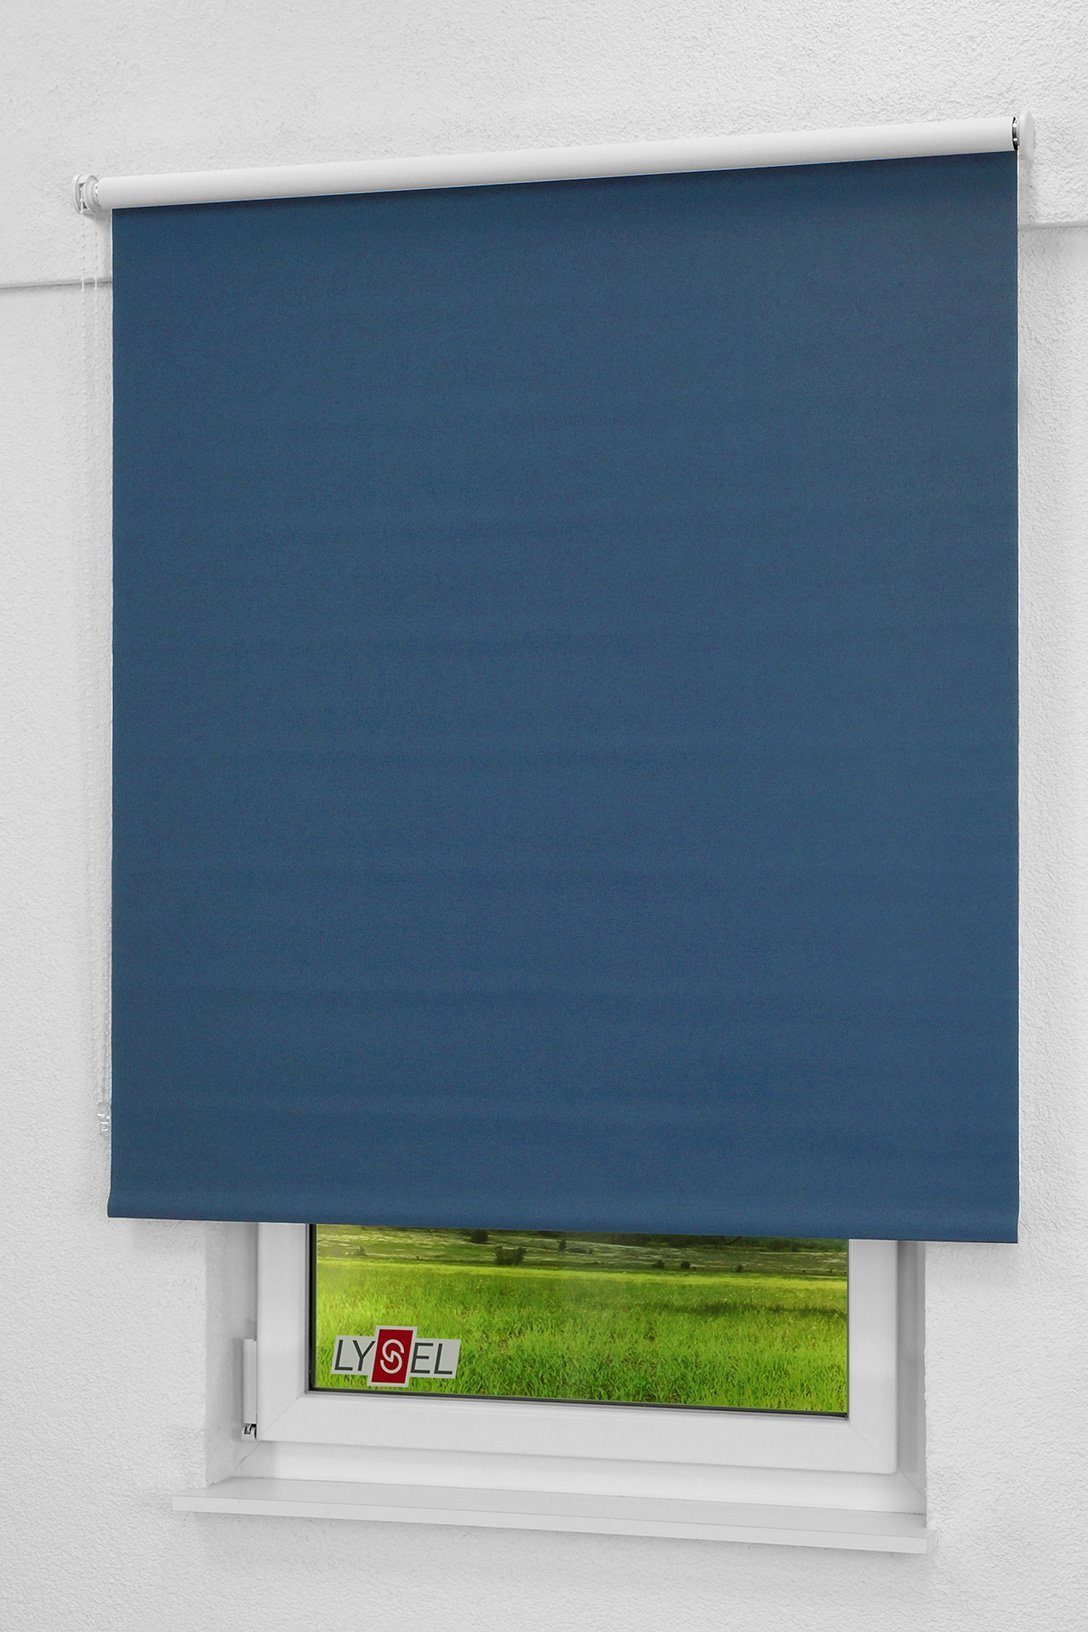 190x43cm Verdunklungsrollo abdunkelnd, Qualitätsrollo violettblau LYSEL®, abdunkelnd, HxB